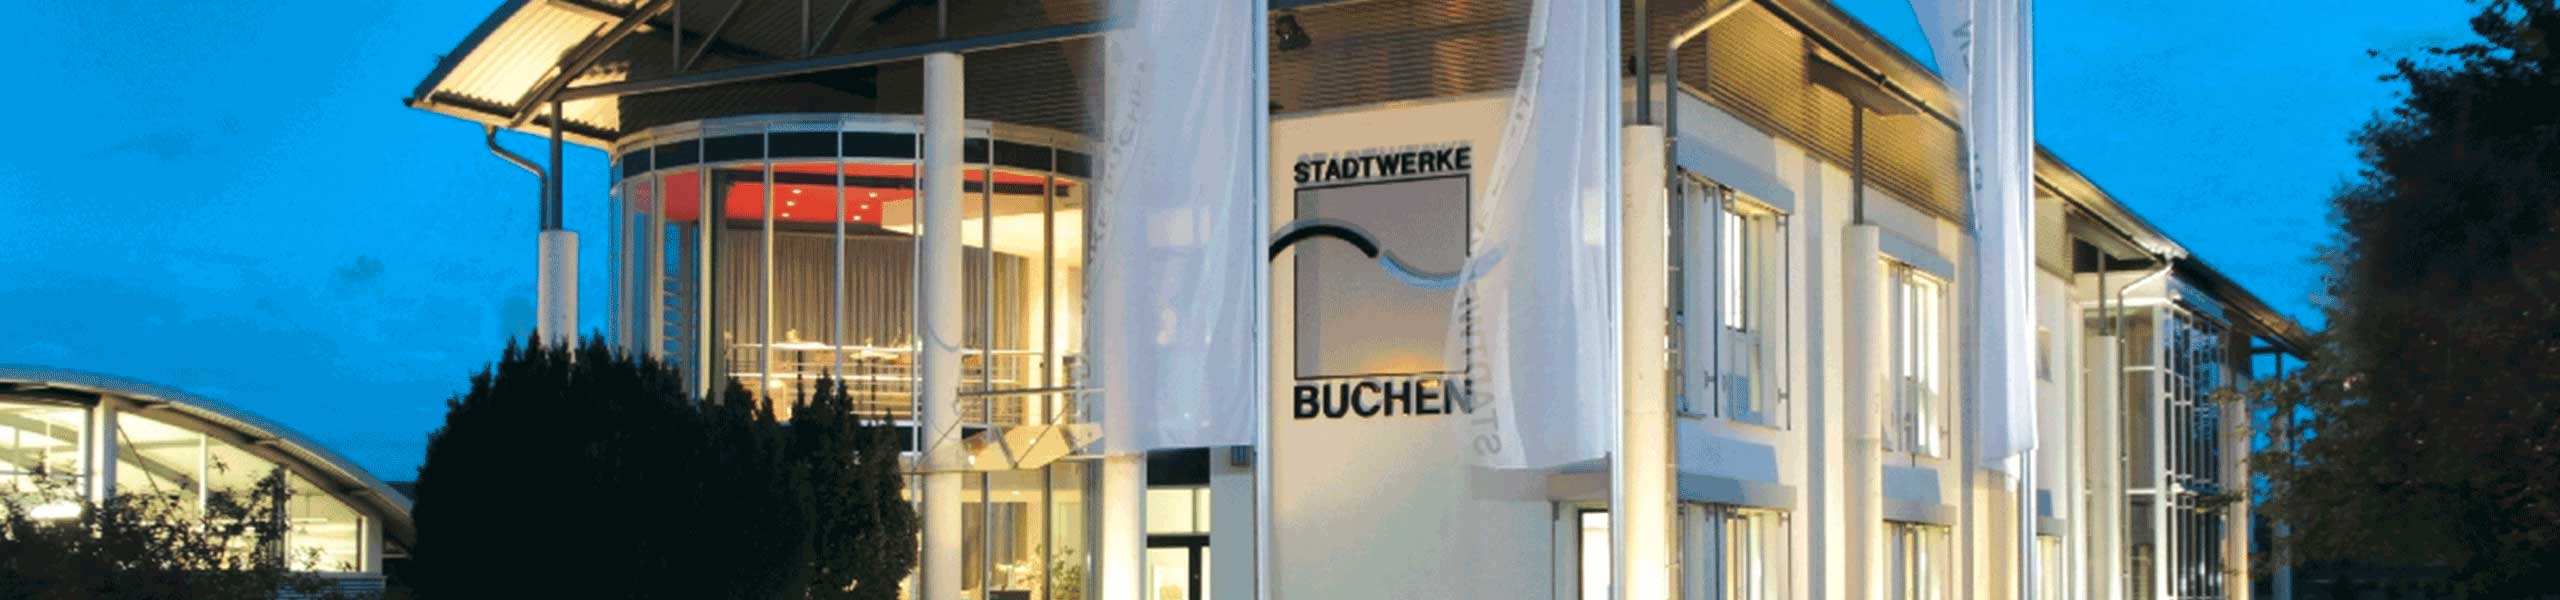 Stadtwerke Buchen GmbH & Co KG - Ingenieur oder Techniker (m/w/d) Elektro-/Automatisierungstechnik